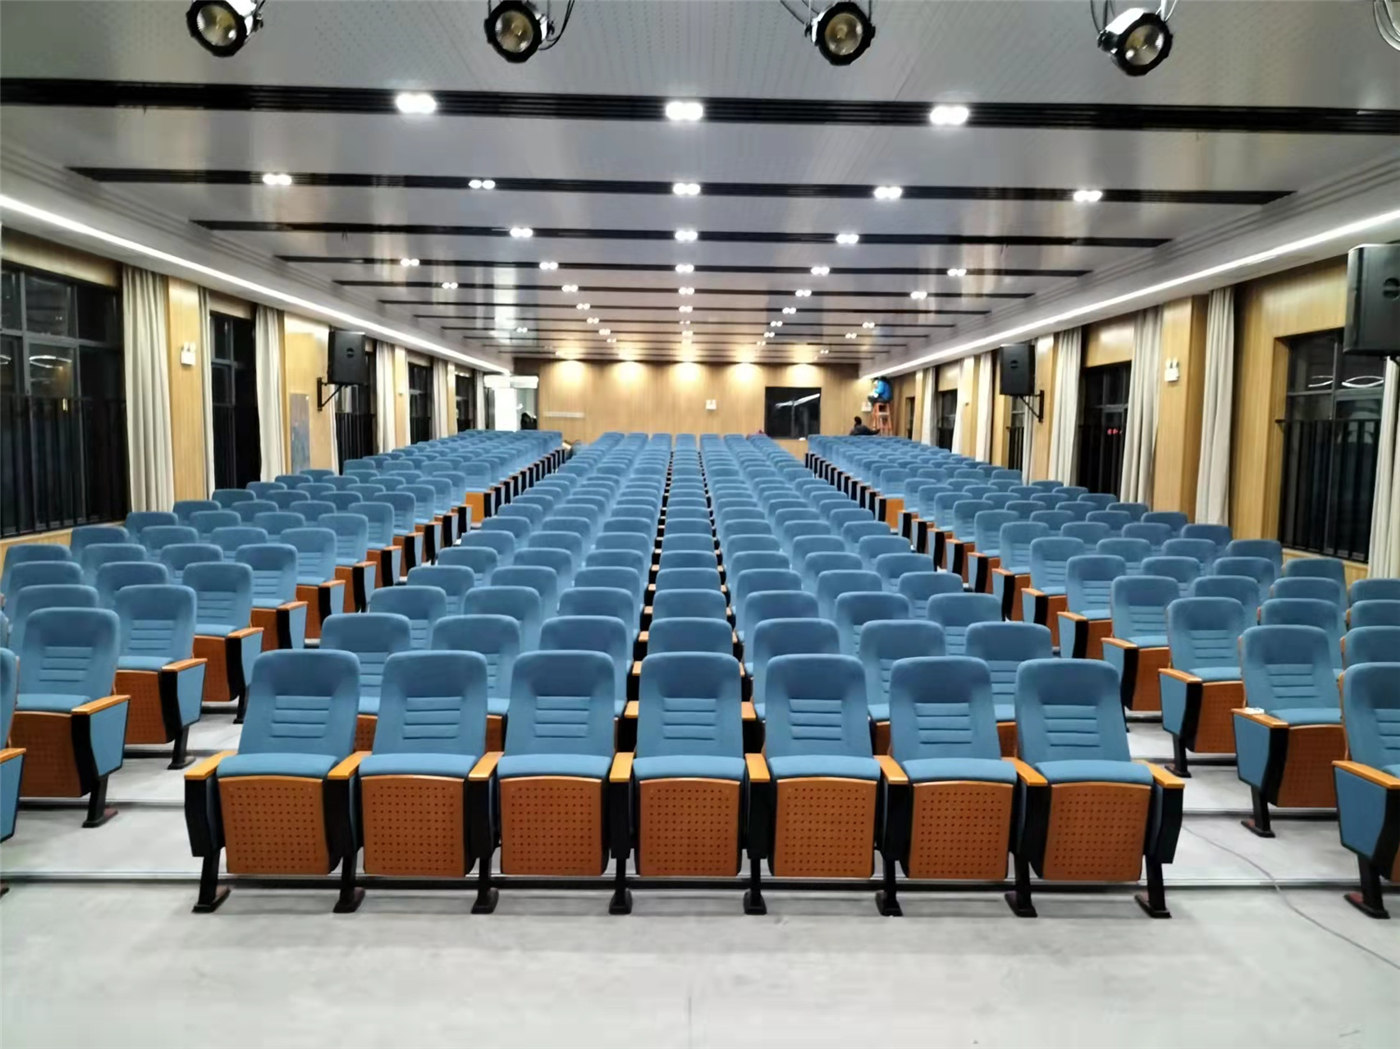 Manaova sary maharitra miaraka amin'ny Vahaolana Seating Auditorium Luxury avy amin'ny Manufacturers hajaina1